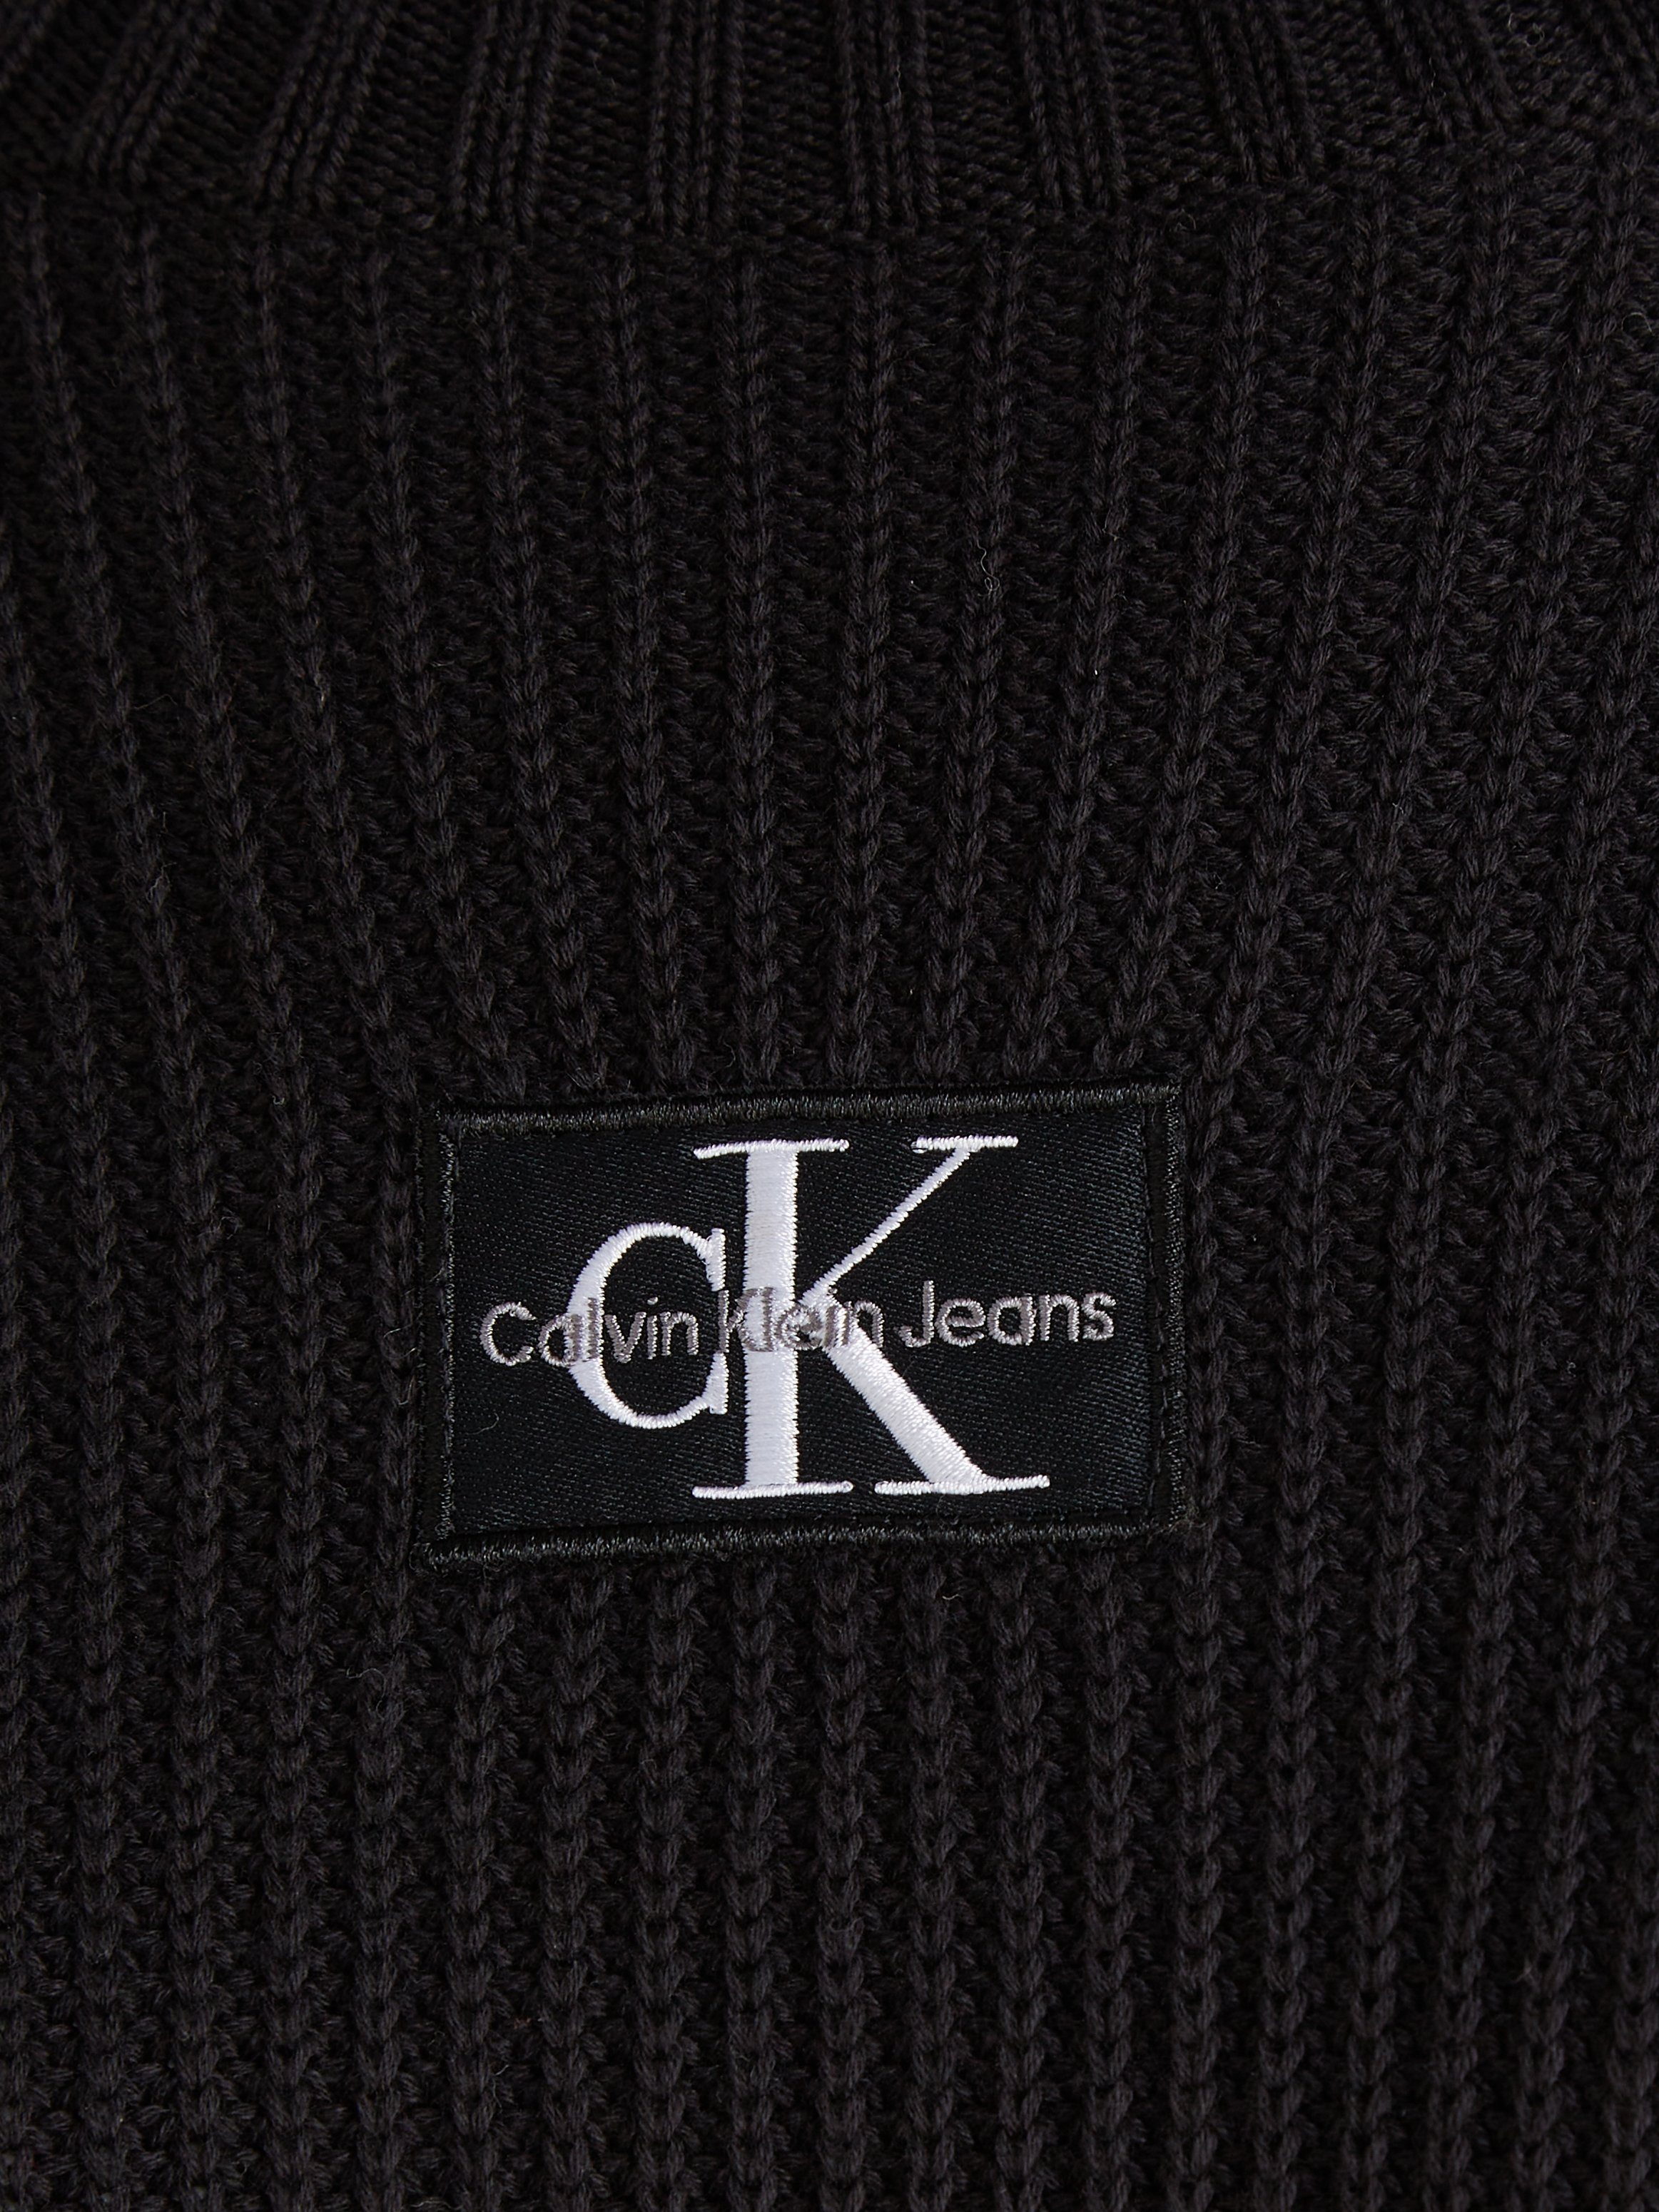 WOVEN SWEATER Klein DRESS Sweatkleid Ck Black Jeans Calvin LOOSE LABEL